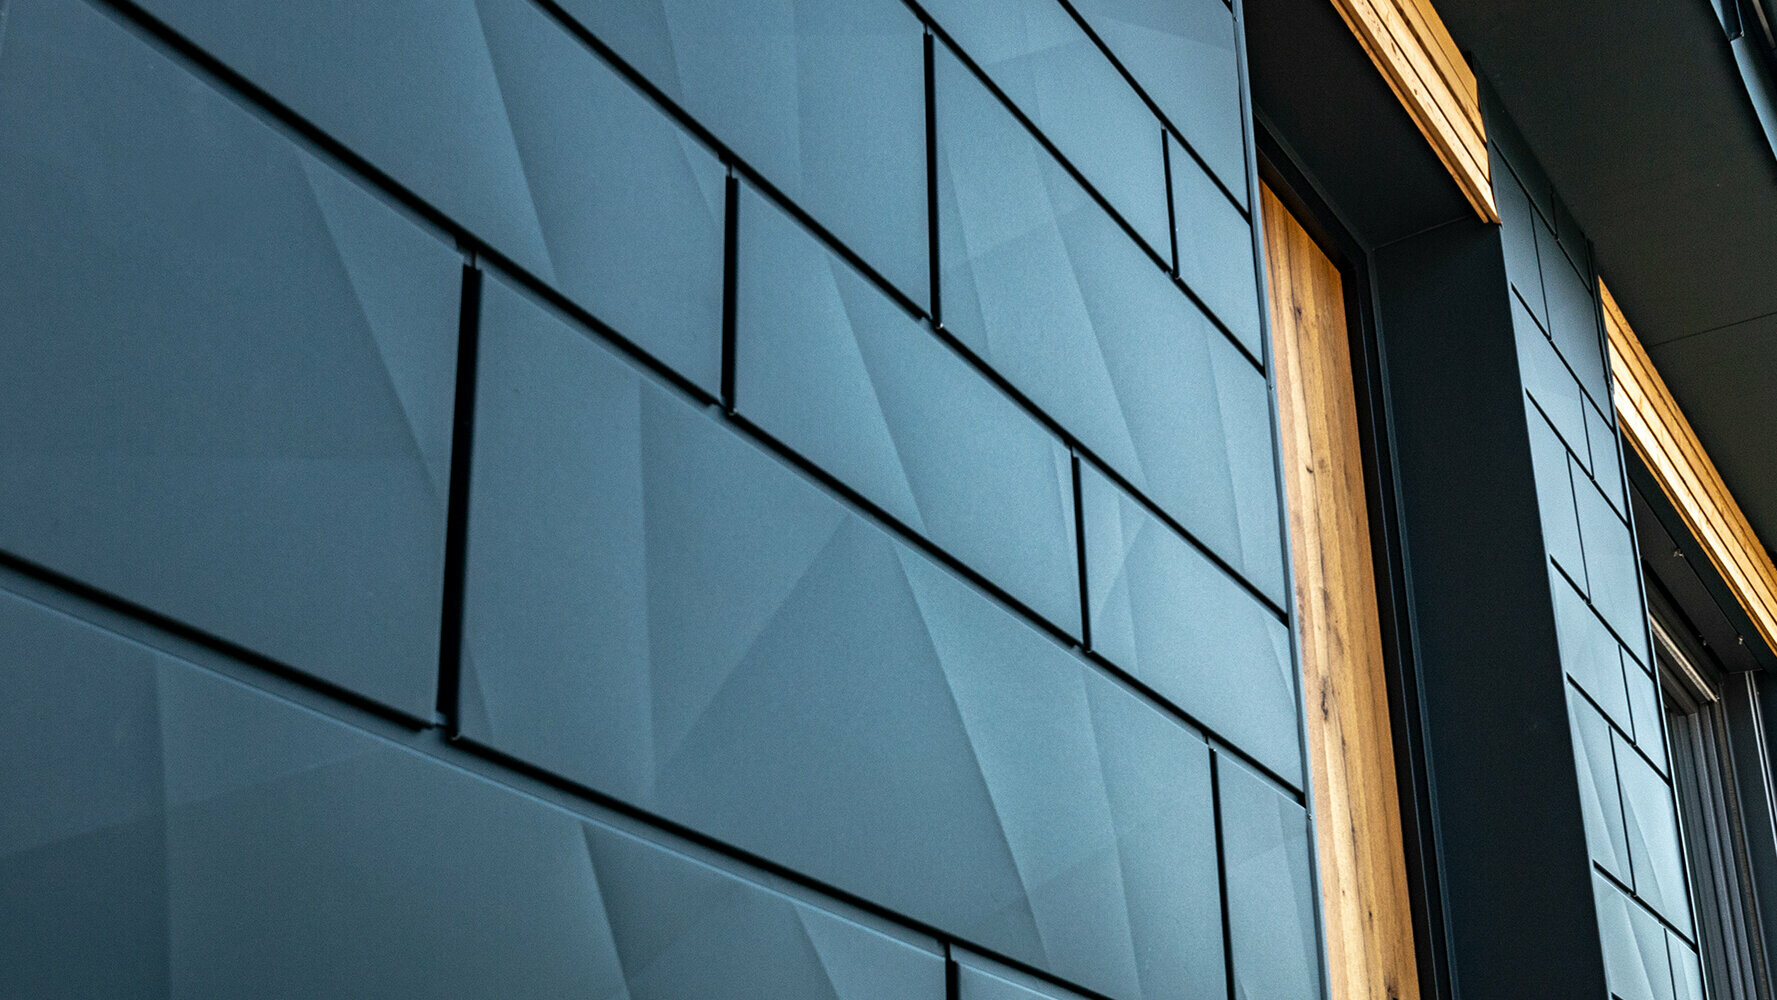 Fasádní panely PREFA v lomeném vzhledu; hliníkový fasádní systém PREFA Siding.X v antracitové barvě doplněný dřevěnou fasádou.